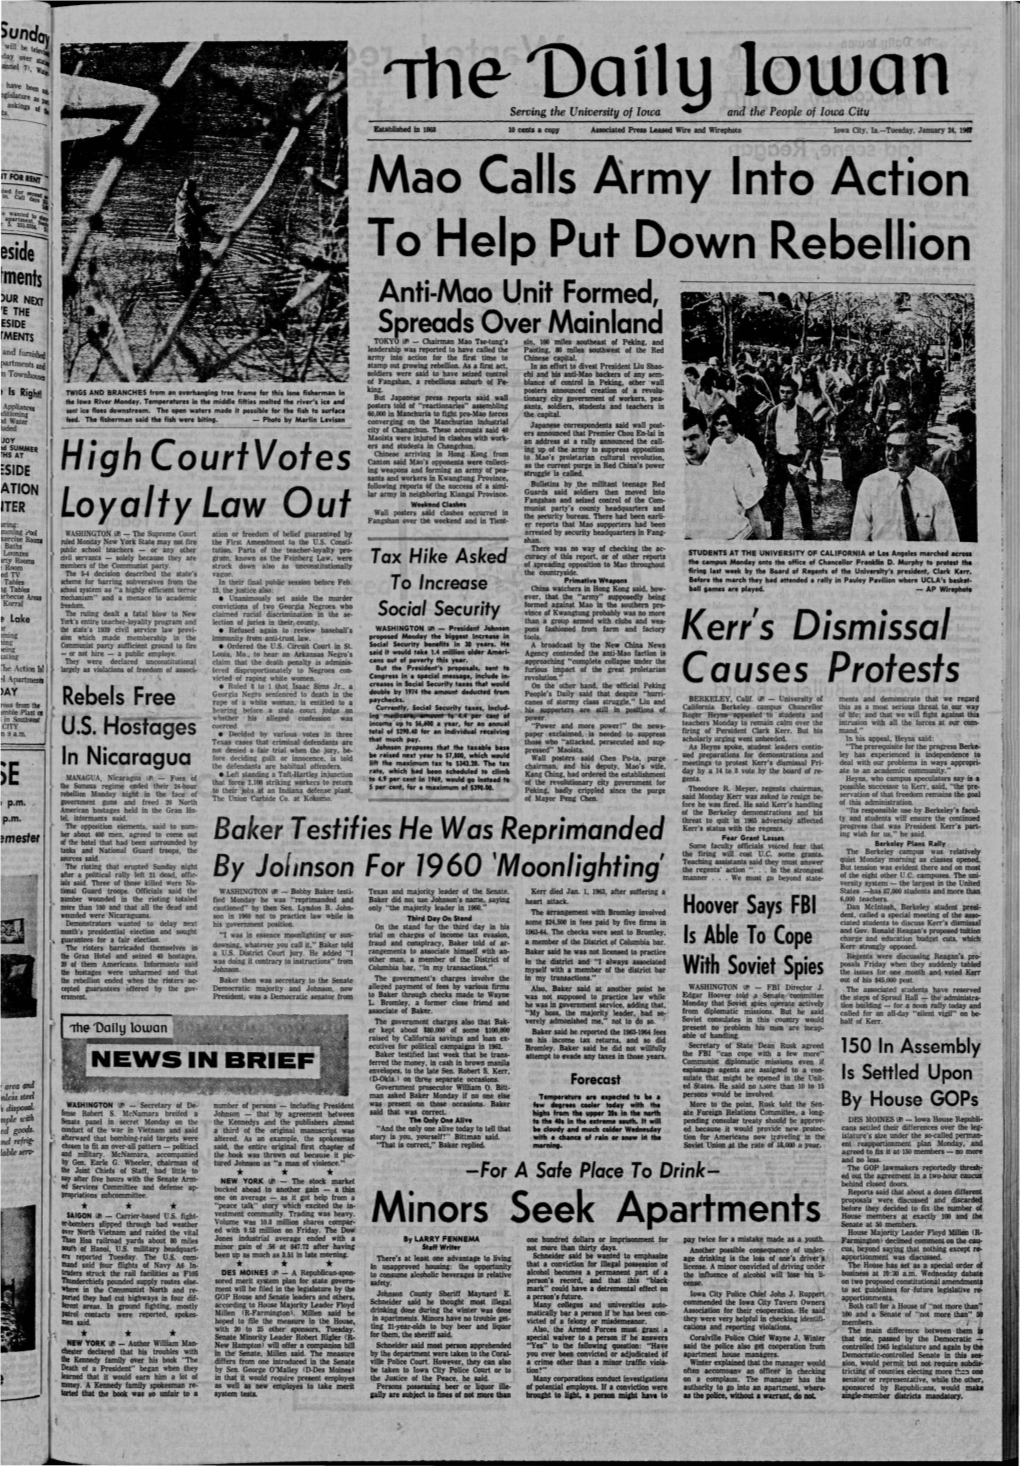 Daily Iowan (Iowa City, Iowa), 1967-01-24